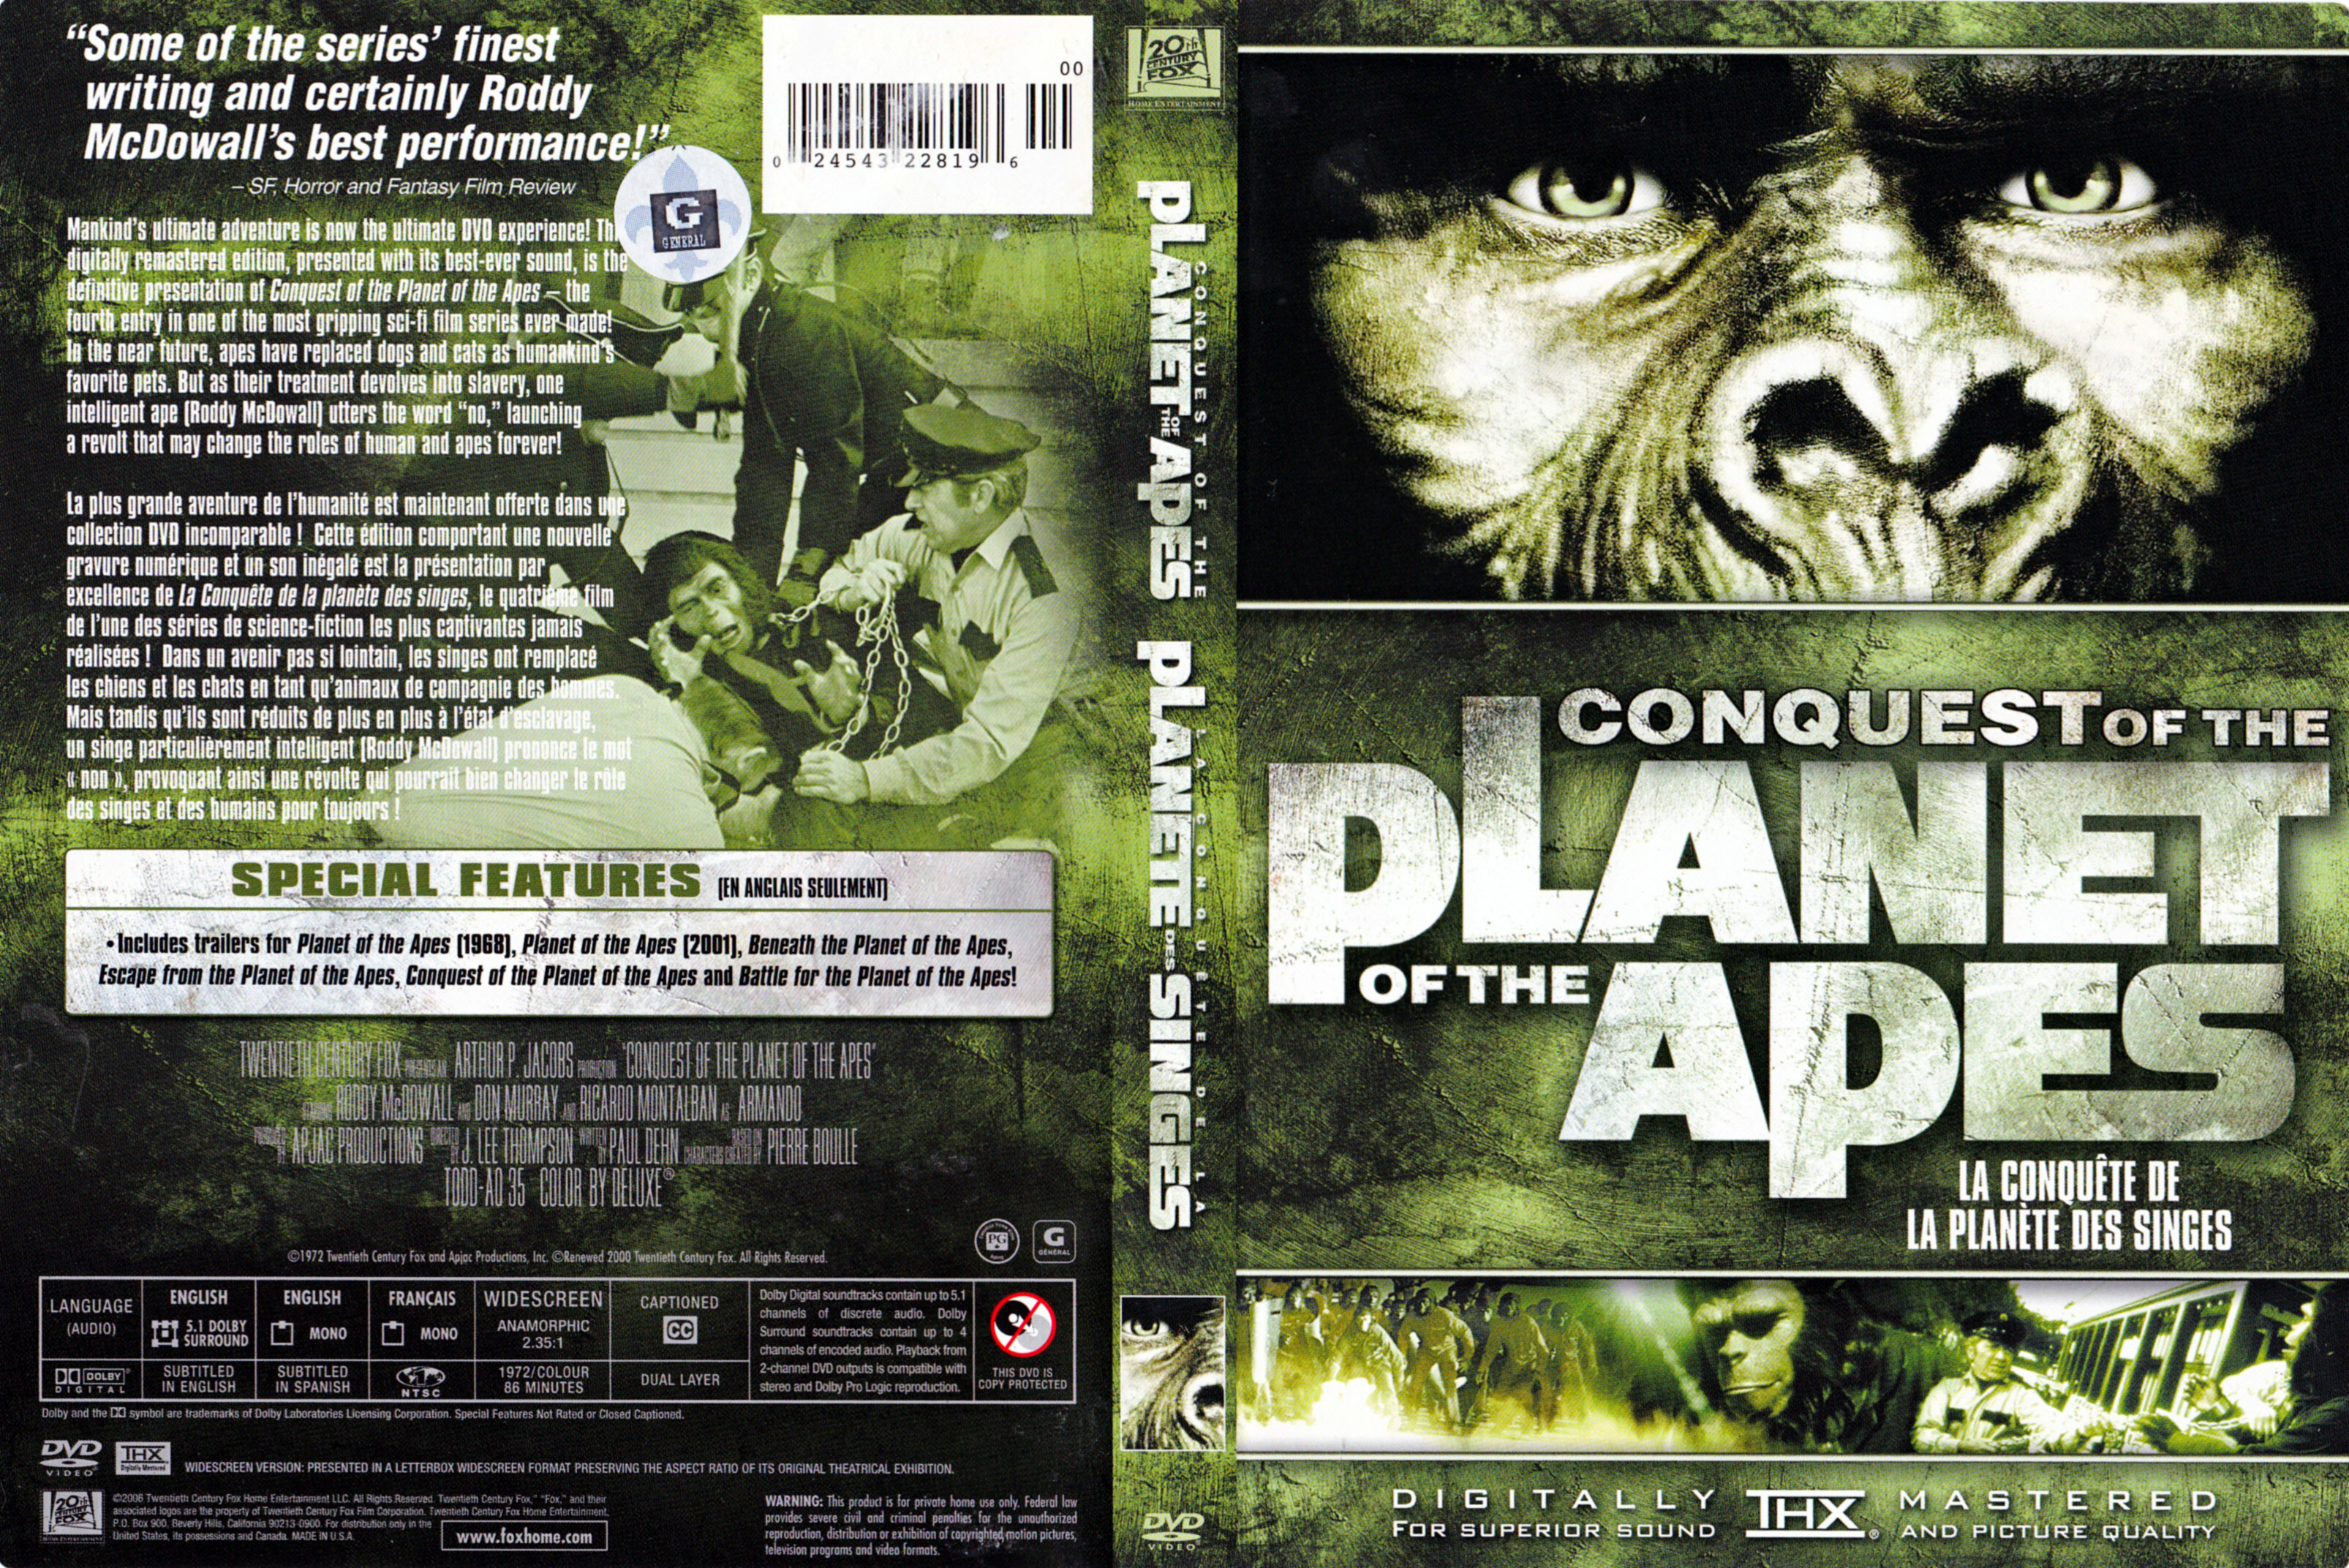 Jaquette DVD Conquest of the planet of the apes - La conqute de la plante des singes (Canadienne)